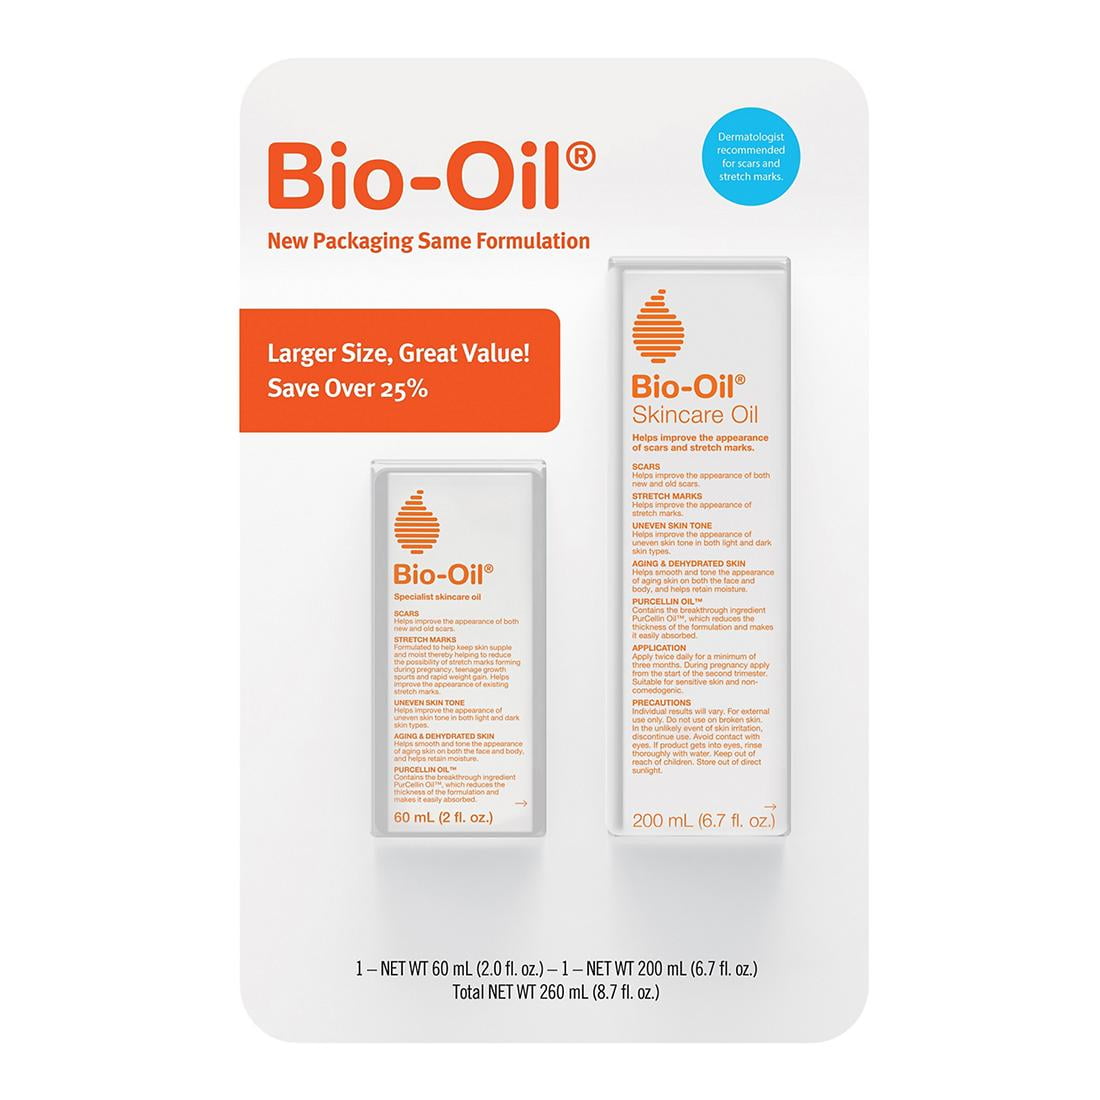 Bio-Oil Specialised Skin Care Oil –